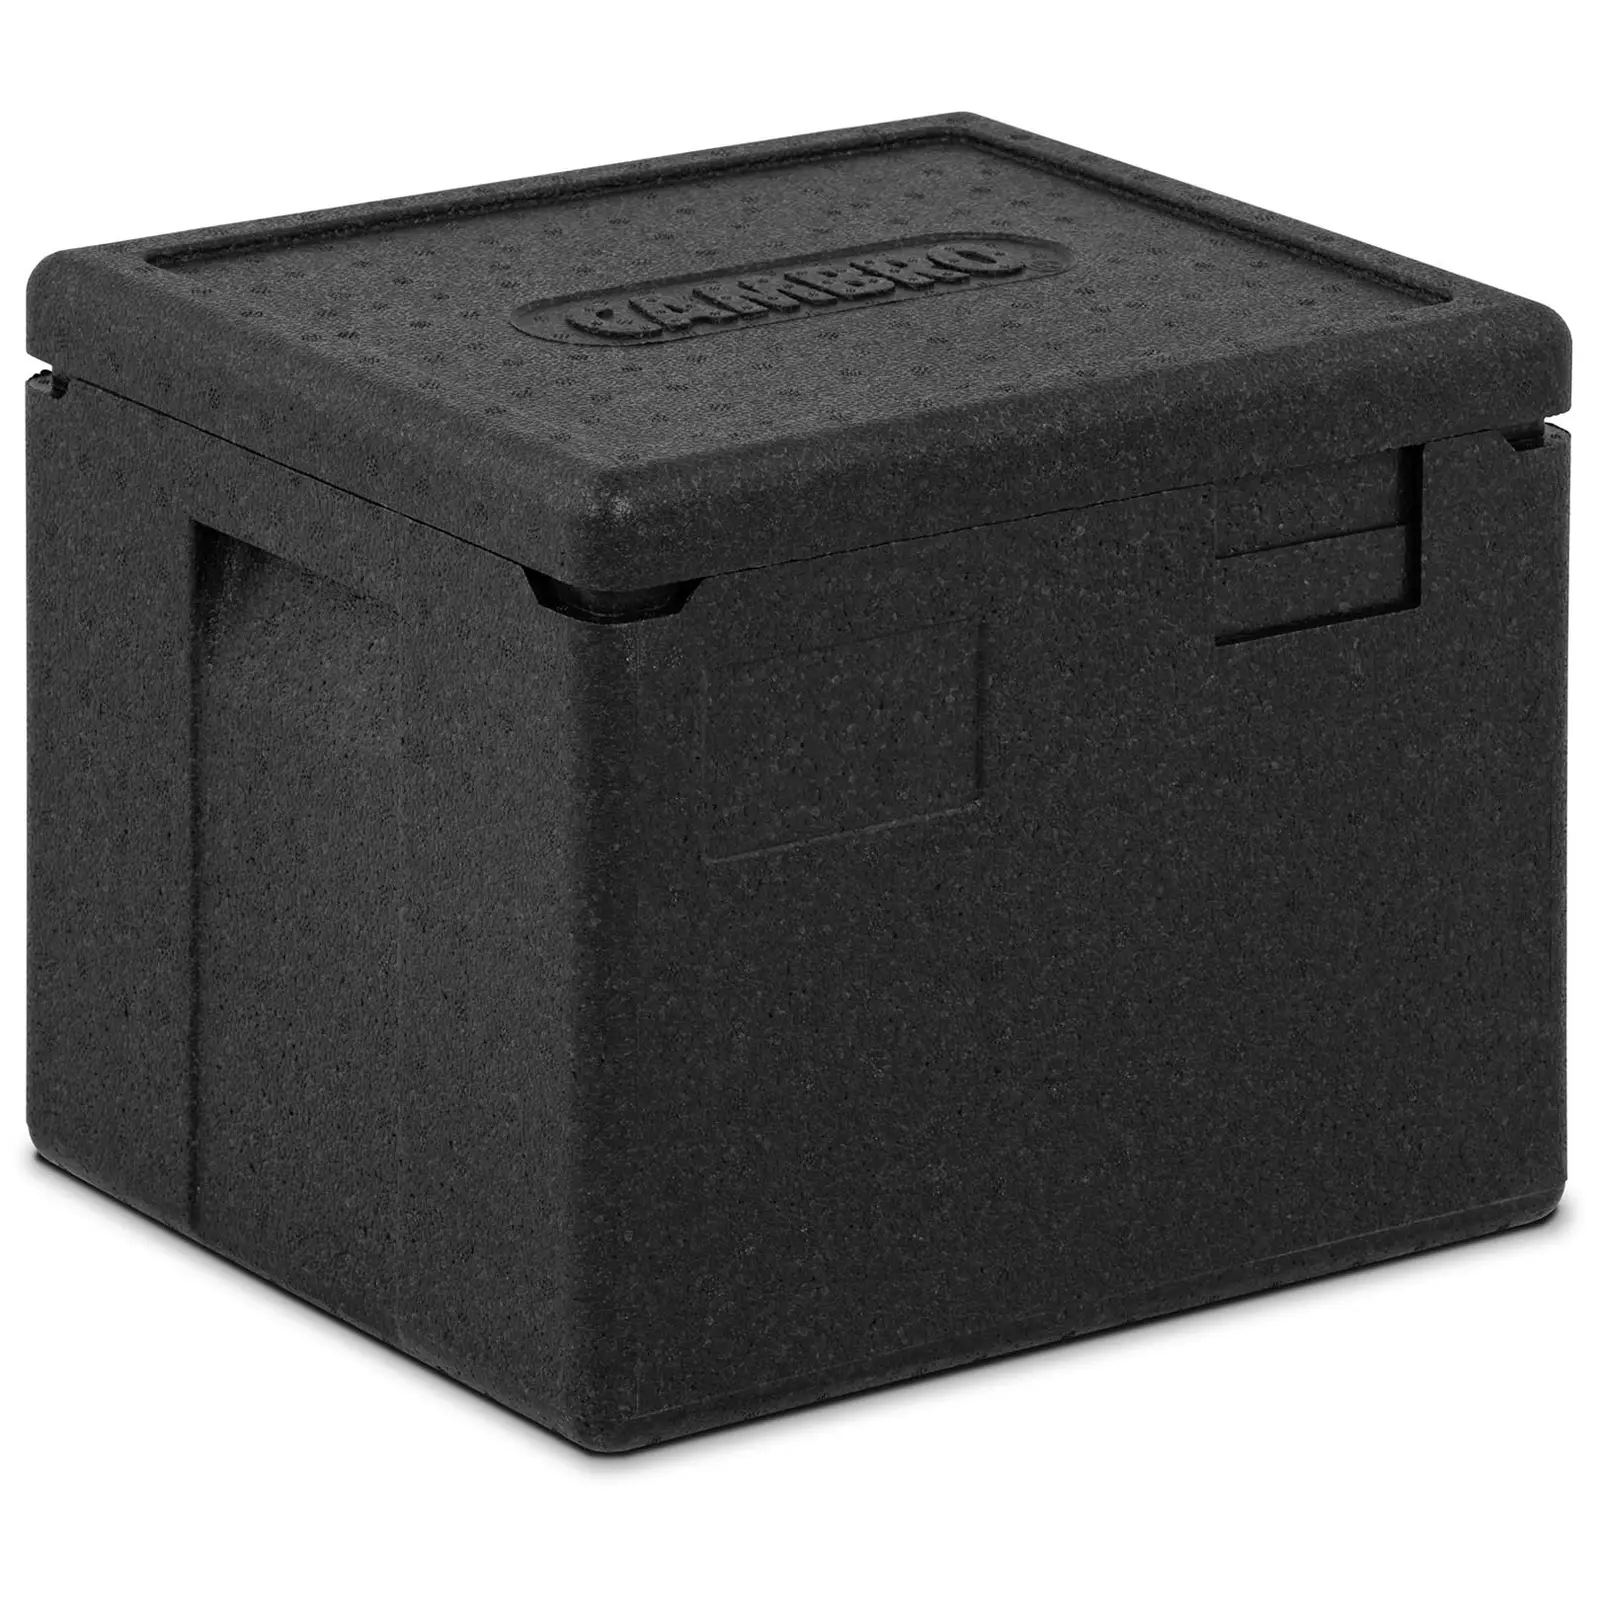 Thermobox - zgornji nakladalnik - za posode GN 1/2 (globina 20 cm)